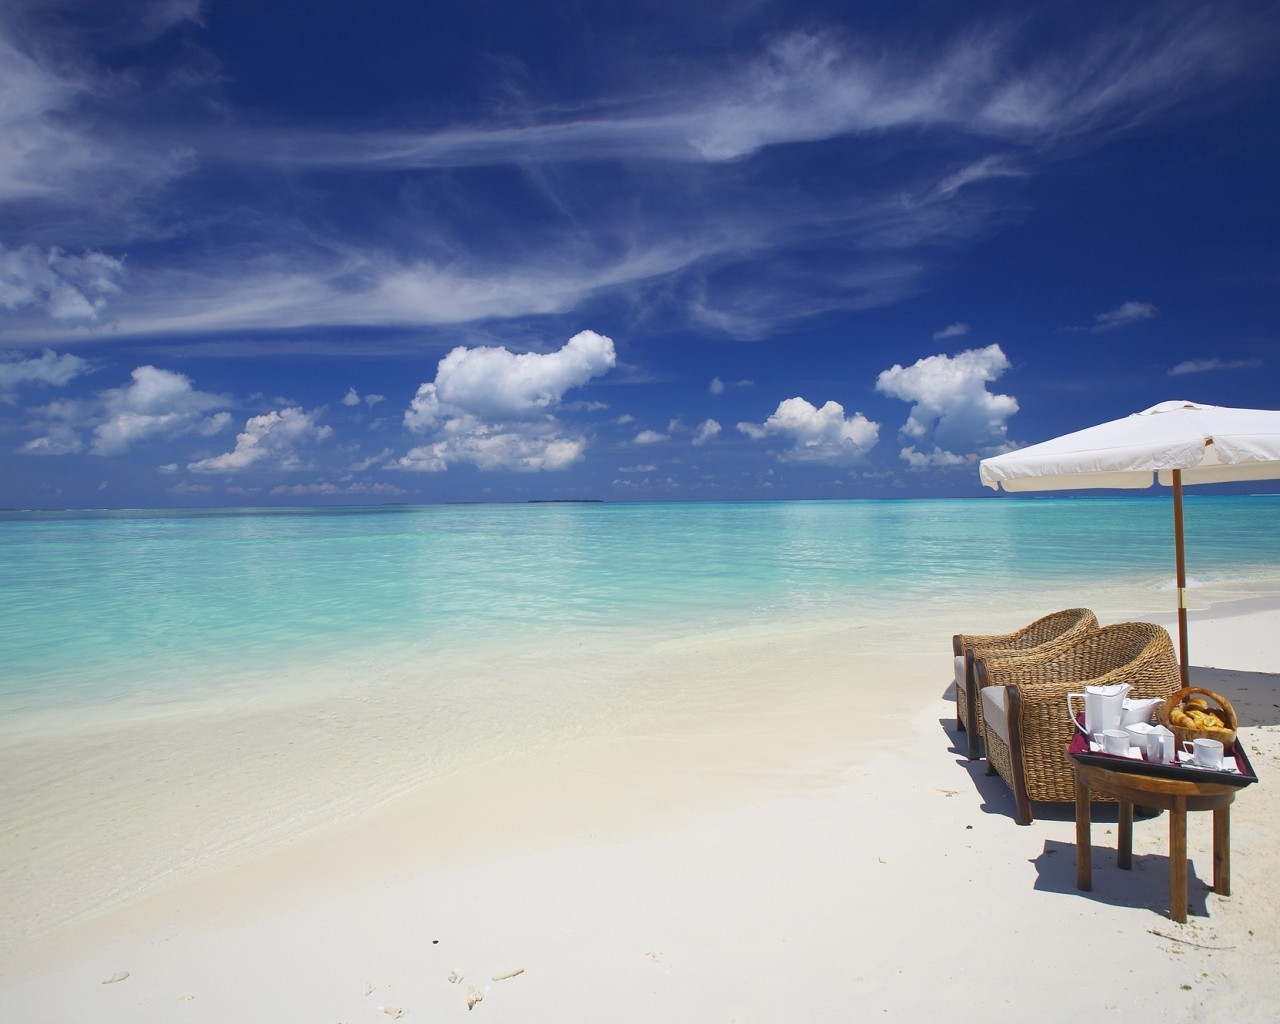 Private Beach Maldives for 1280 x 1024 resolution